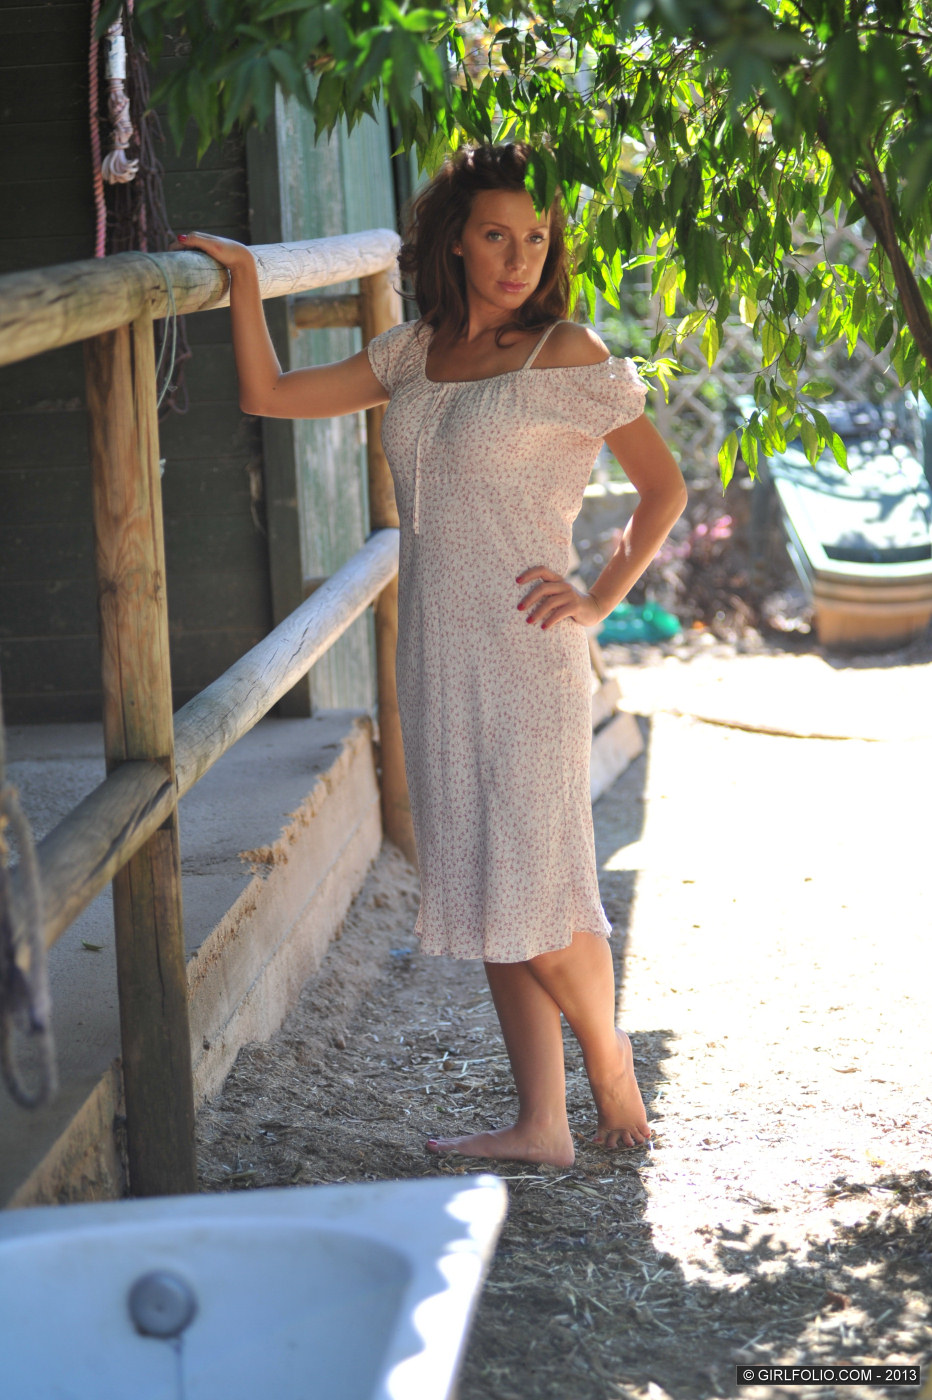 Tori B - brunette milf outdoor in white summer dress - 30-gf-torib-21-030 from Girl Folio